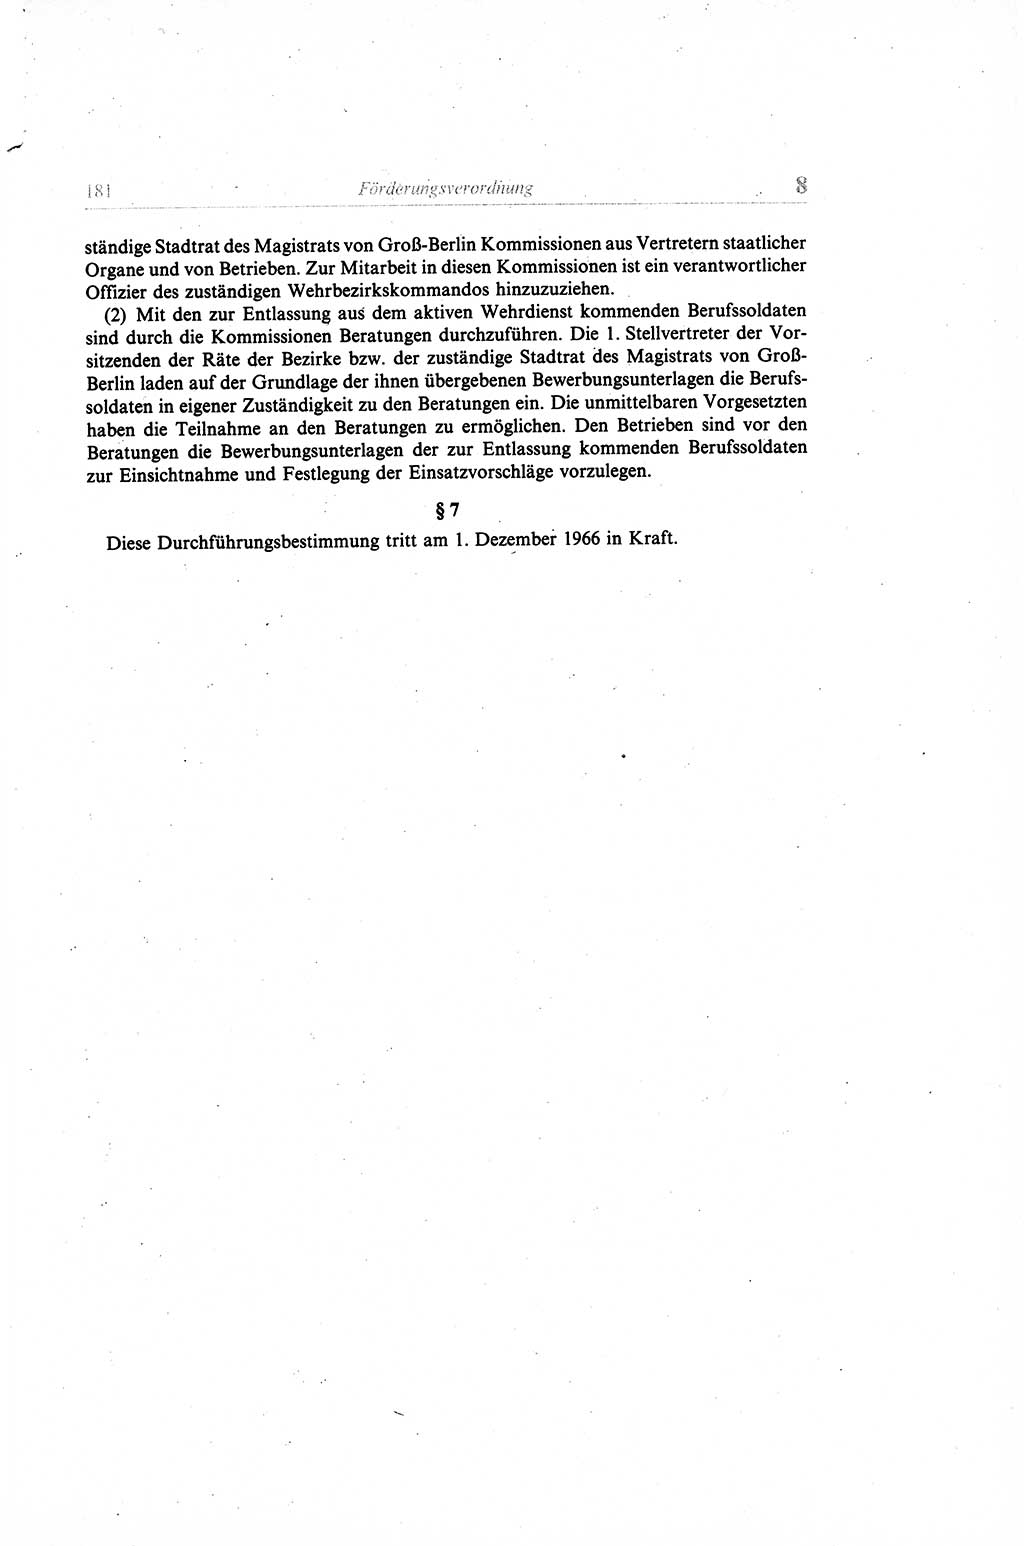 Gesetzbuch der Arbeit (GBA) und andere ausgewählte rechtliche Bestimmungen [Deutsche Demokratische Republik (DDR)] 1968, Seite 181 (GBA DDR 1968, S. 181)